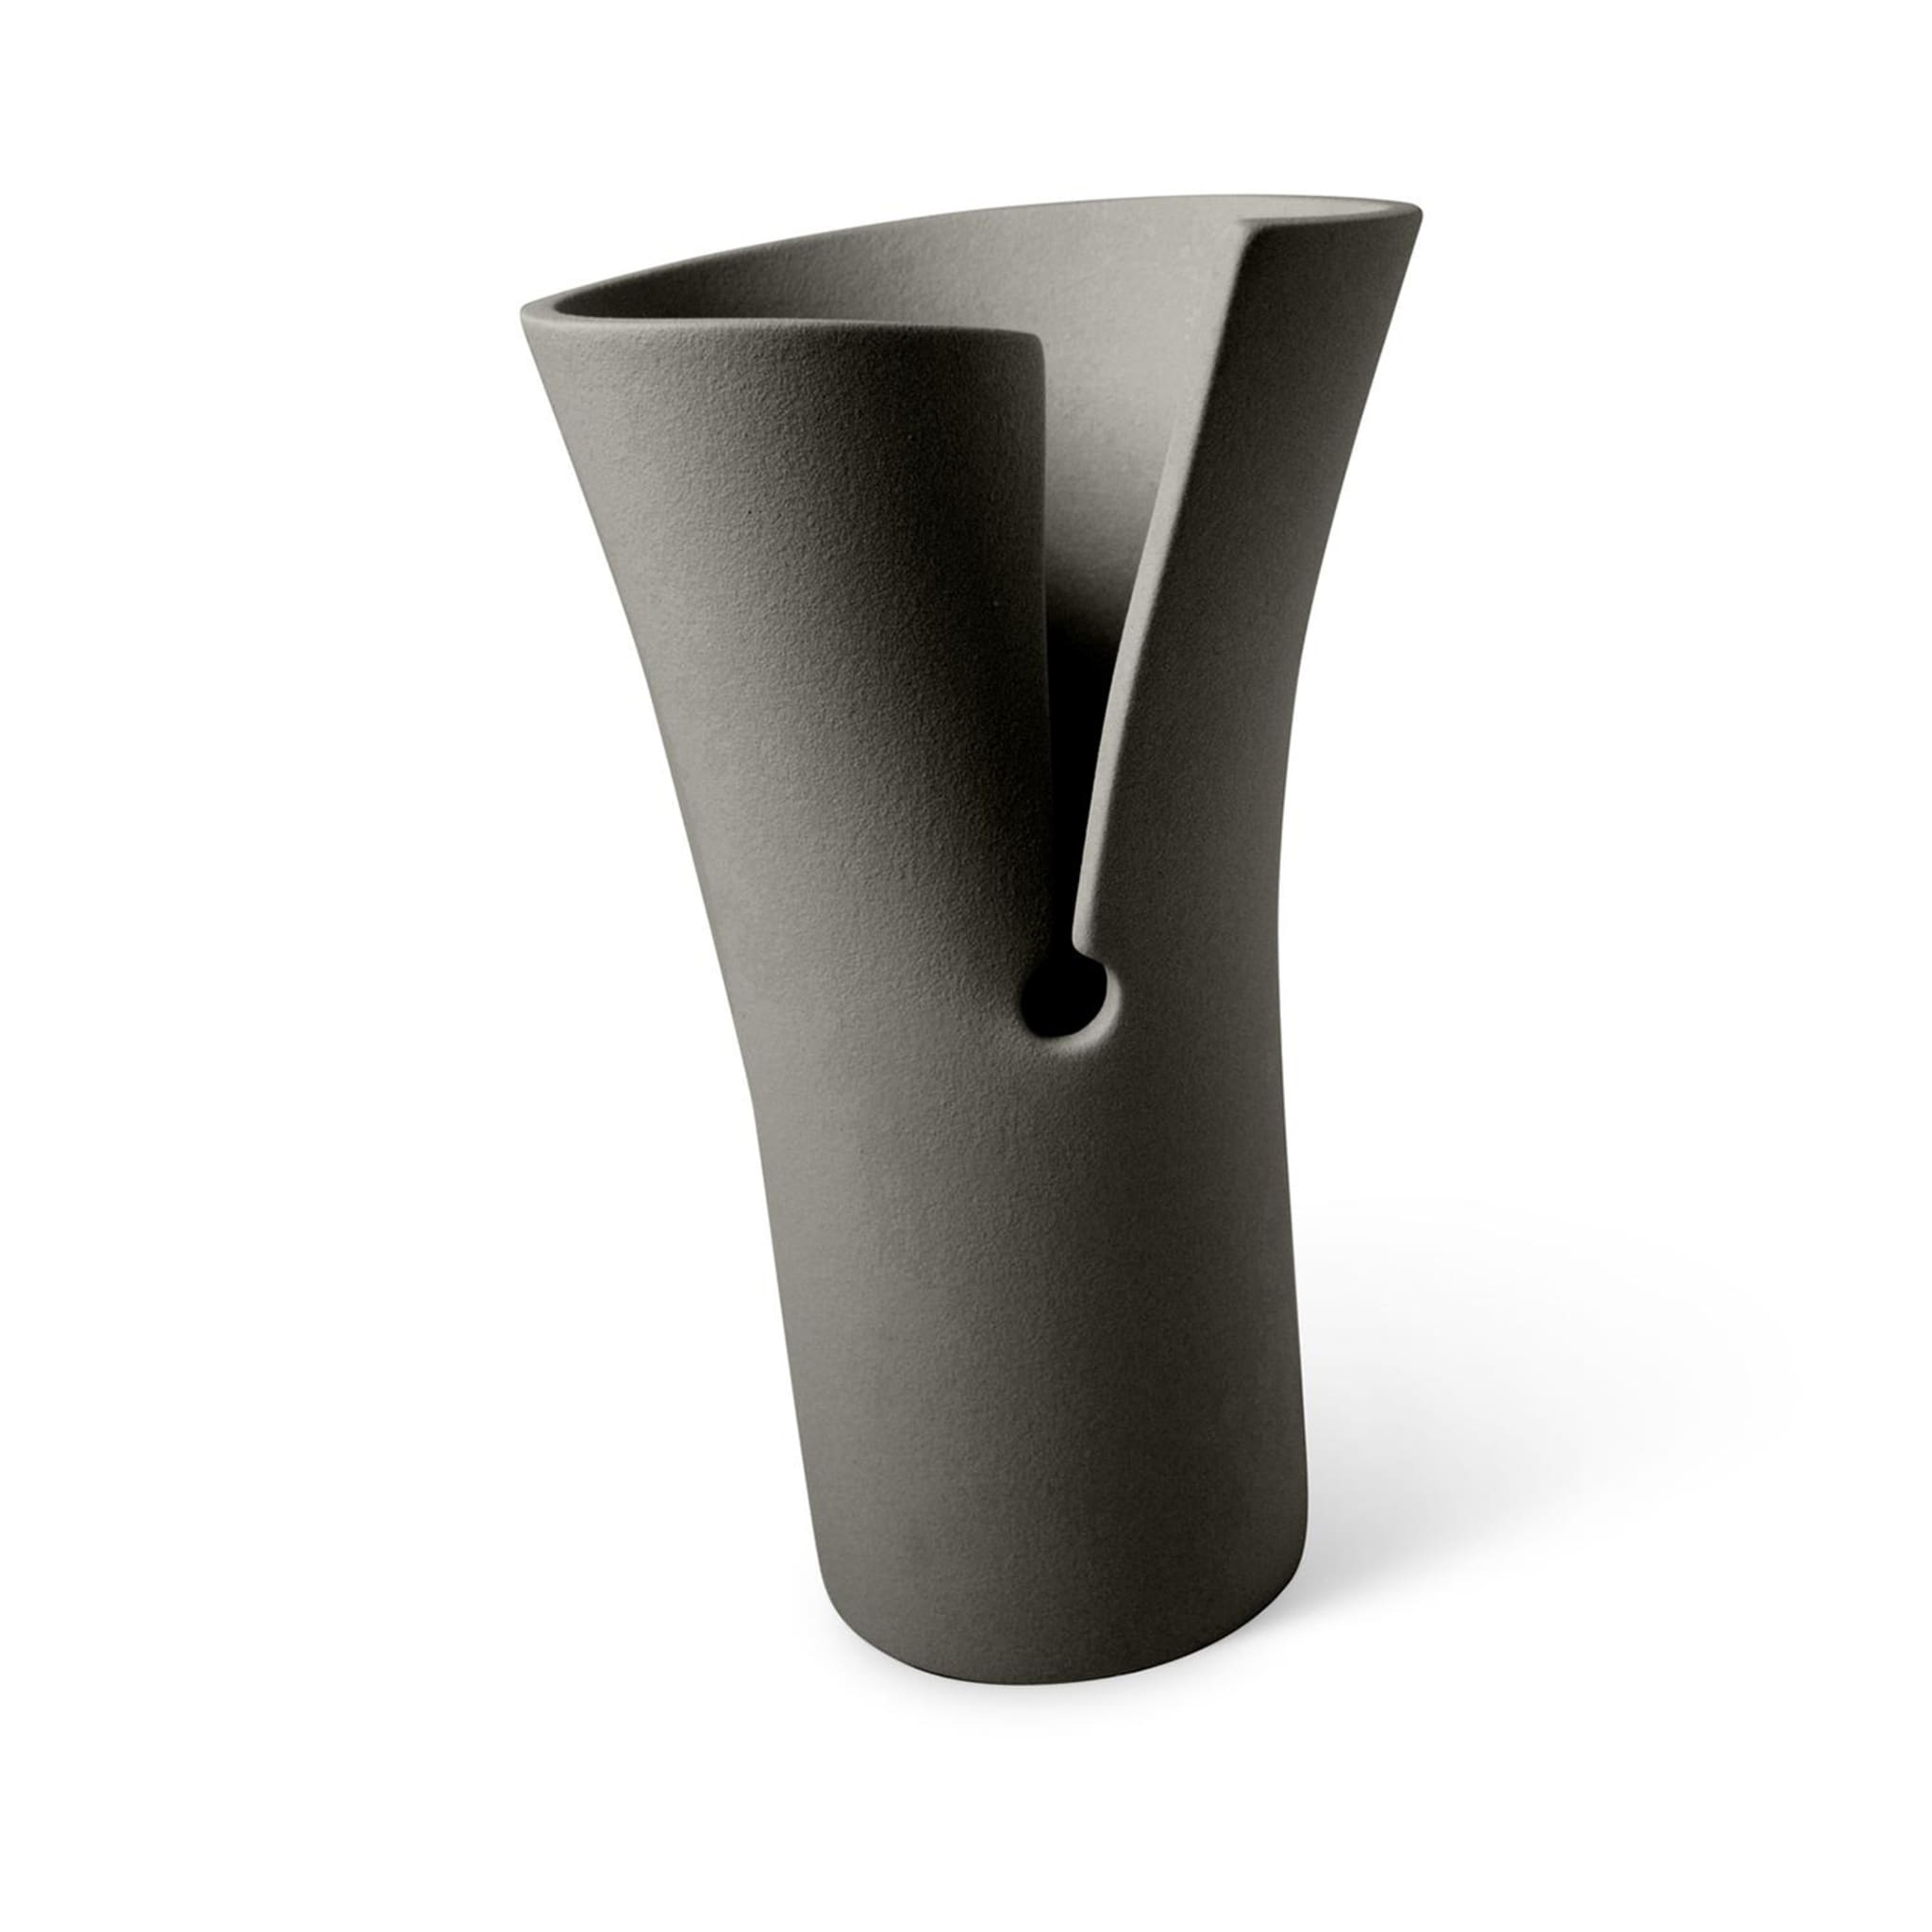 Helix Vase #2 - Alternative view 2